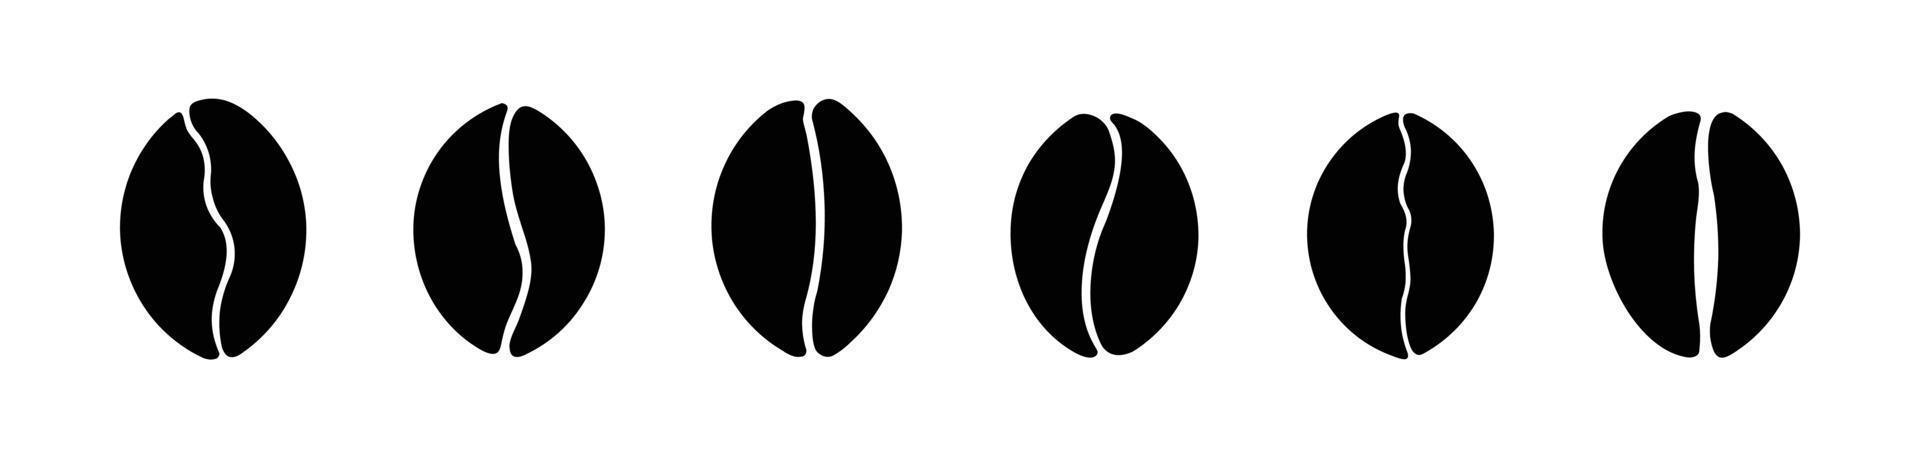 conjunto de iconos de granos de café. ilustración vectorial, ilustración de icono plano aislado de granos de café. vector